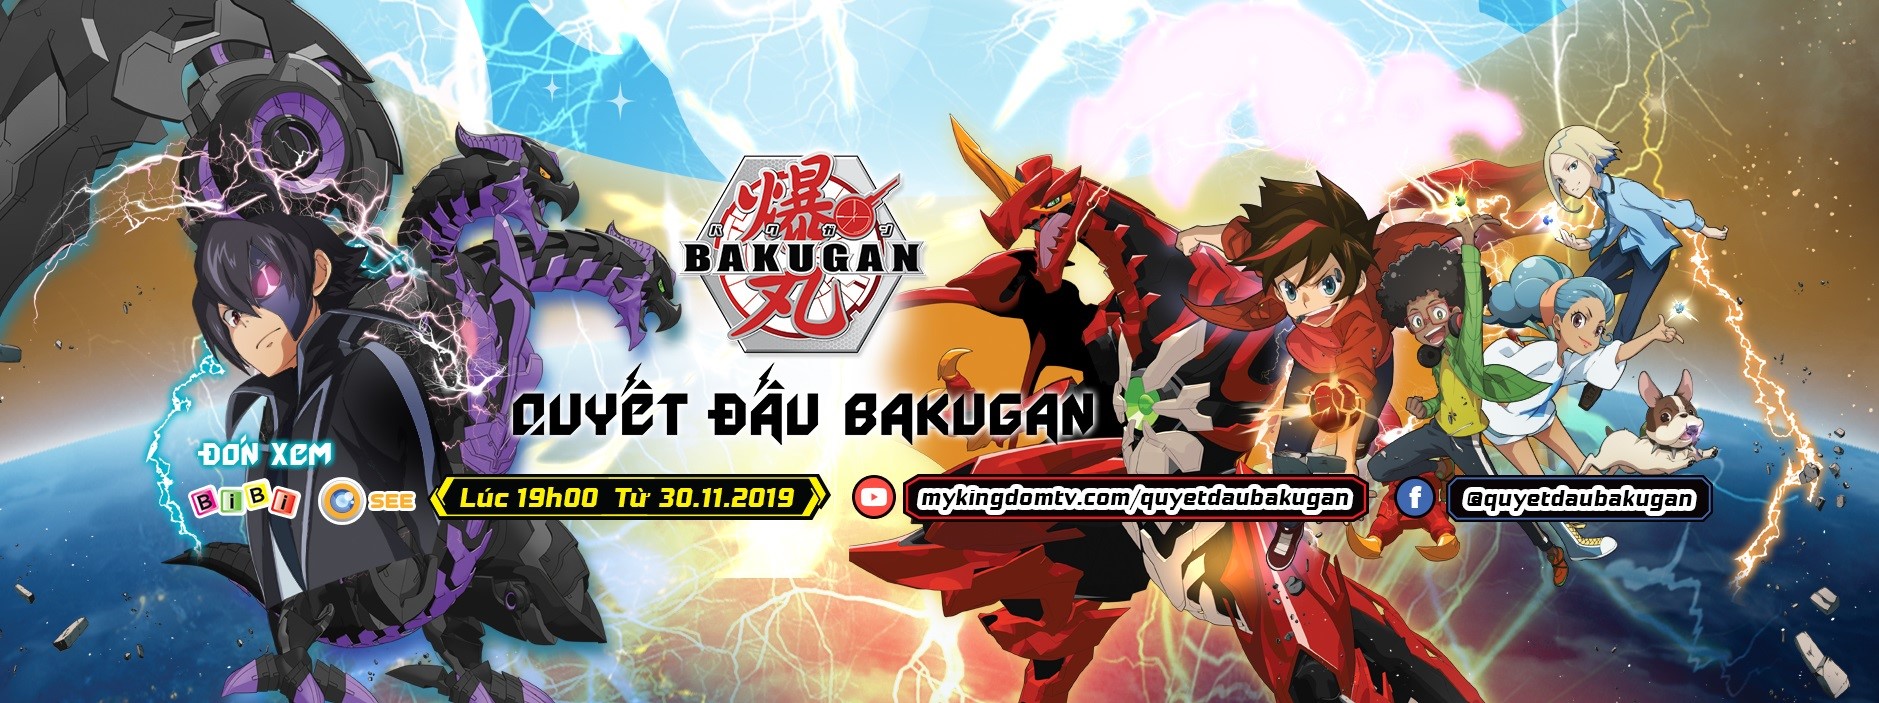 Quyết Đấu Bakugan - Siêu Chiến Binh Rồng Lửa DX Dragonoid Red - Baku014